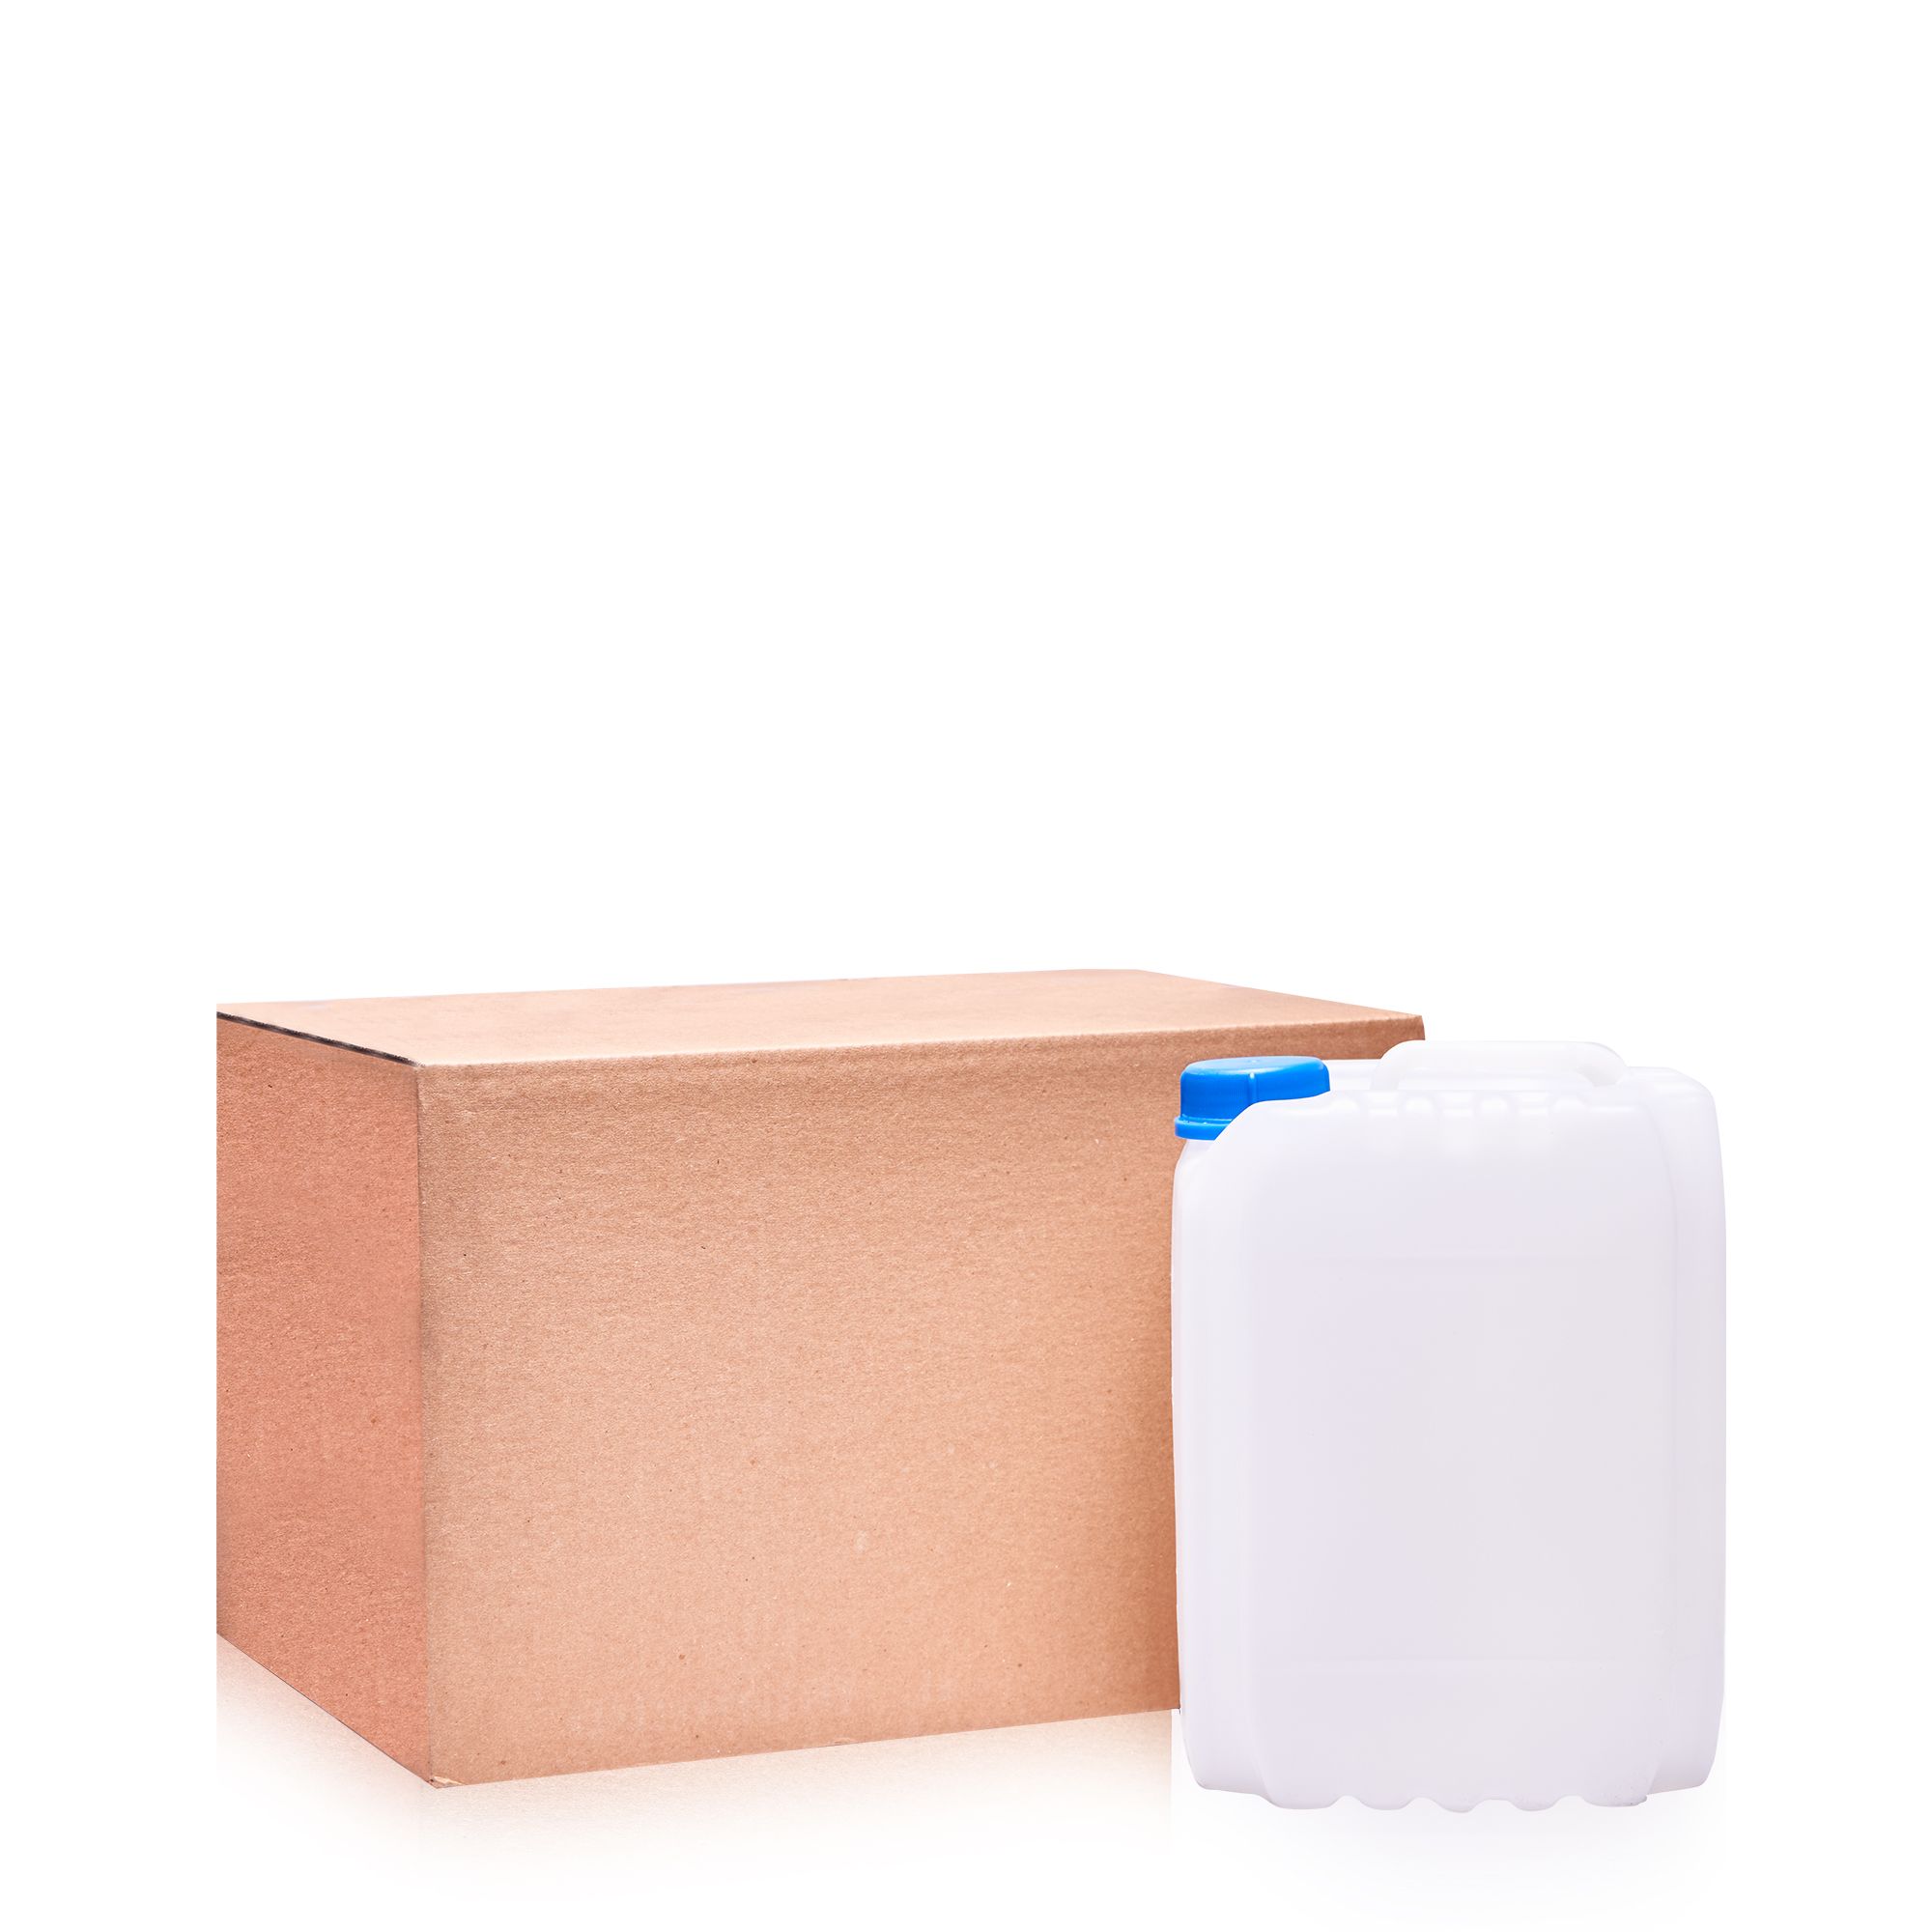 Растворитель Bi-Solv 1205 — канистра с картонной коробкой